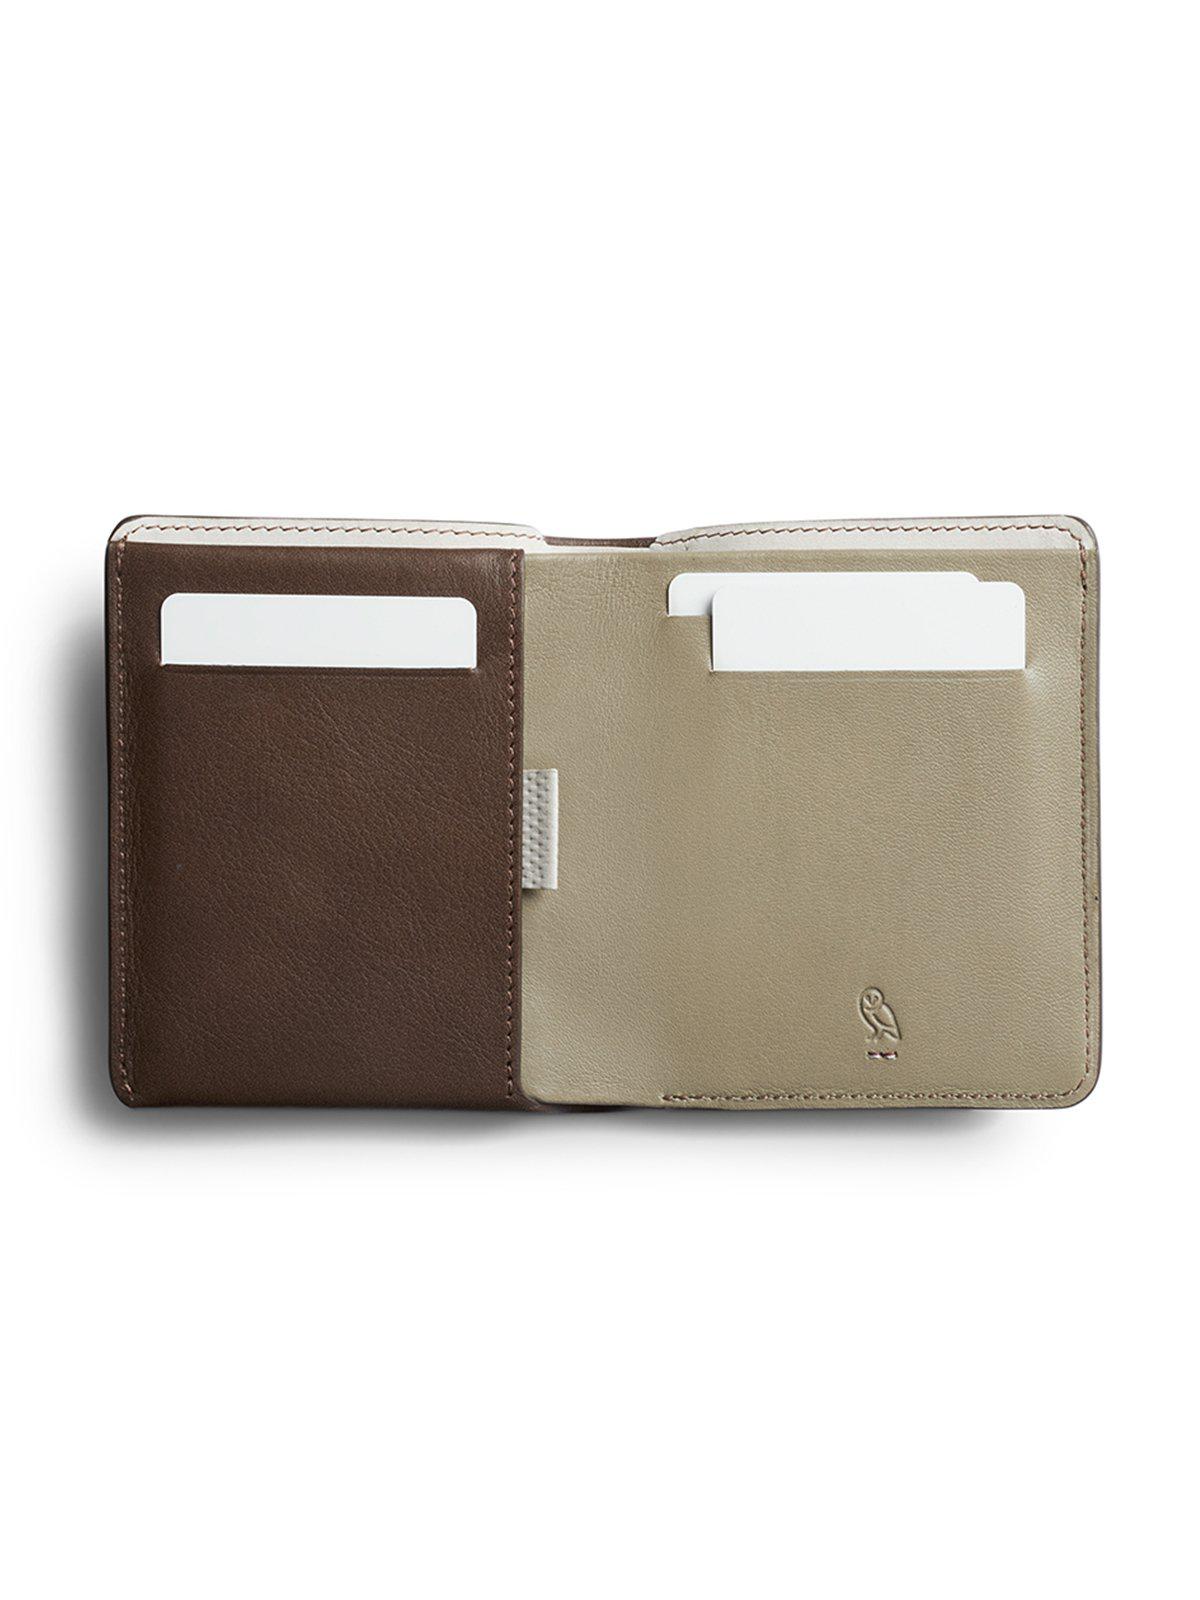 Bellroy Note Sleeve Wallet Premium Edition Darkwood RFID